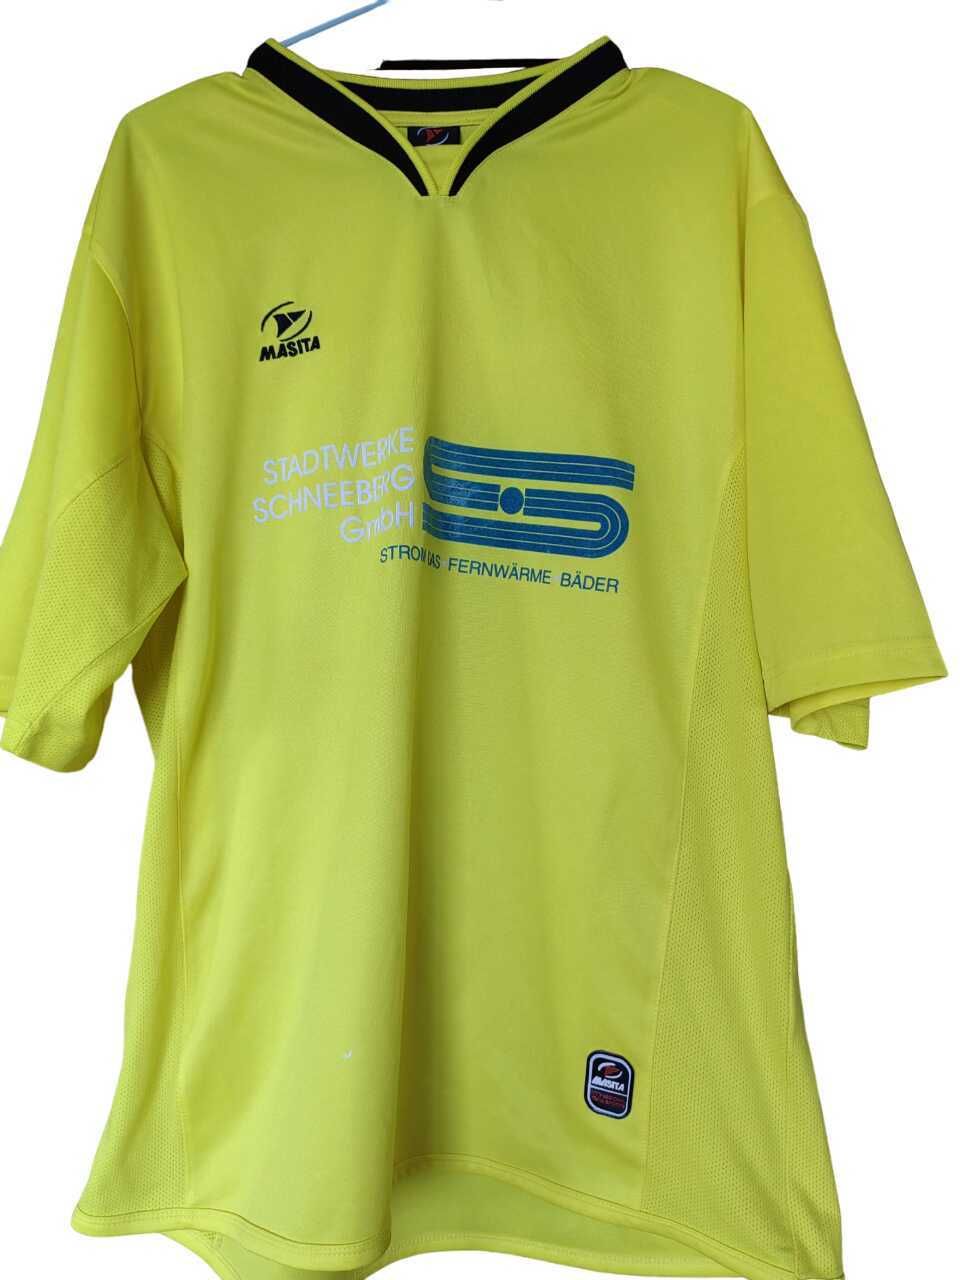 Мъжка тениска с напидиси Masita, 100% полиестер, Жълта, 75х63 см, XL